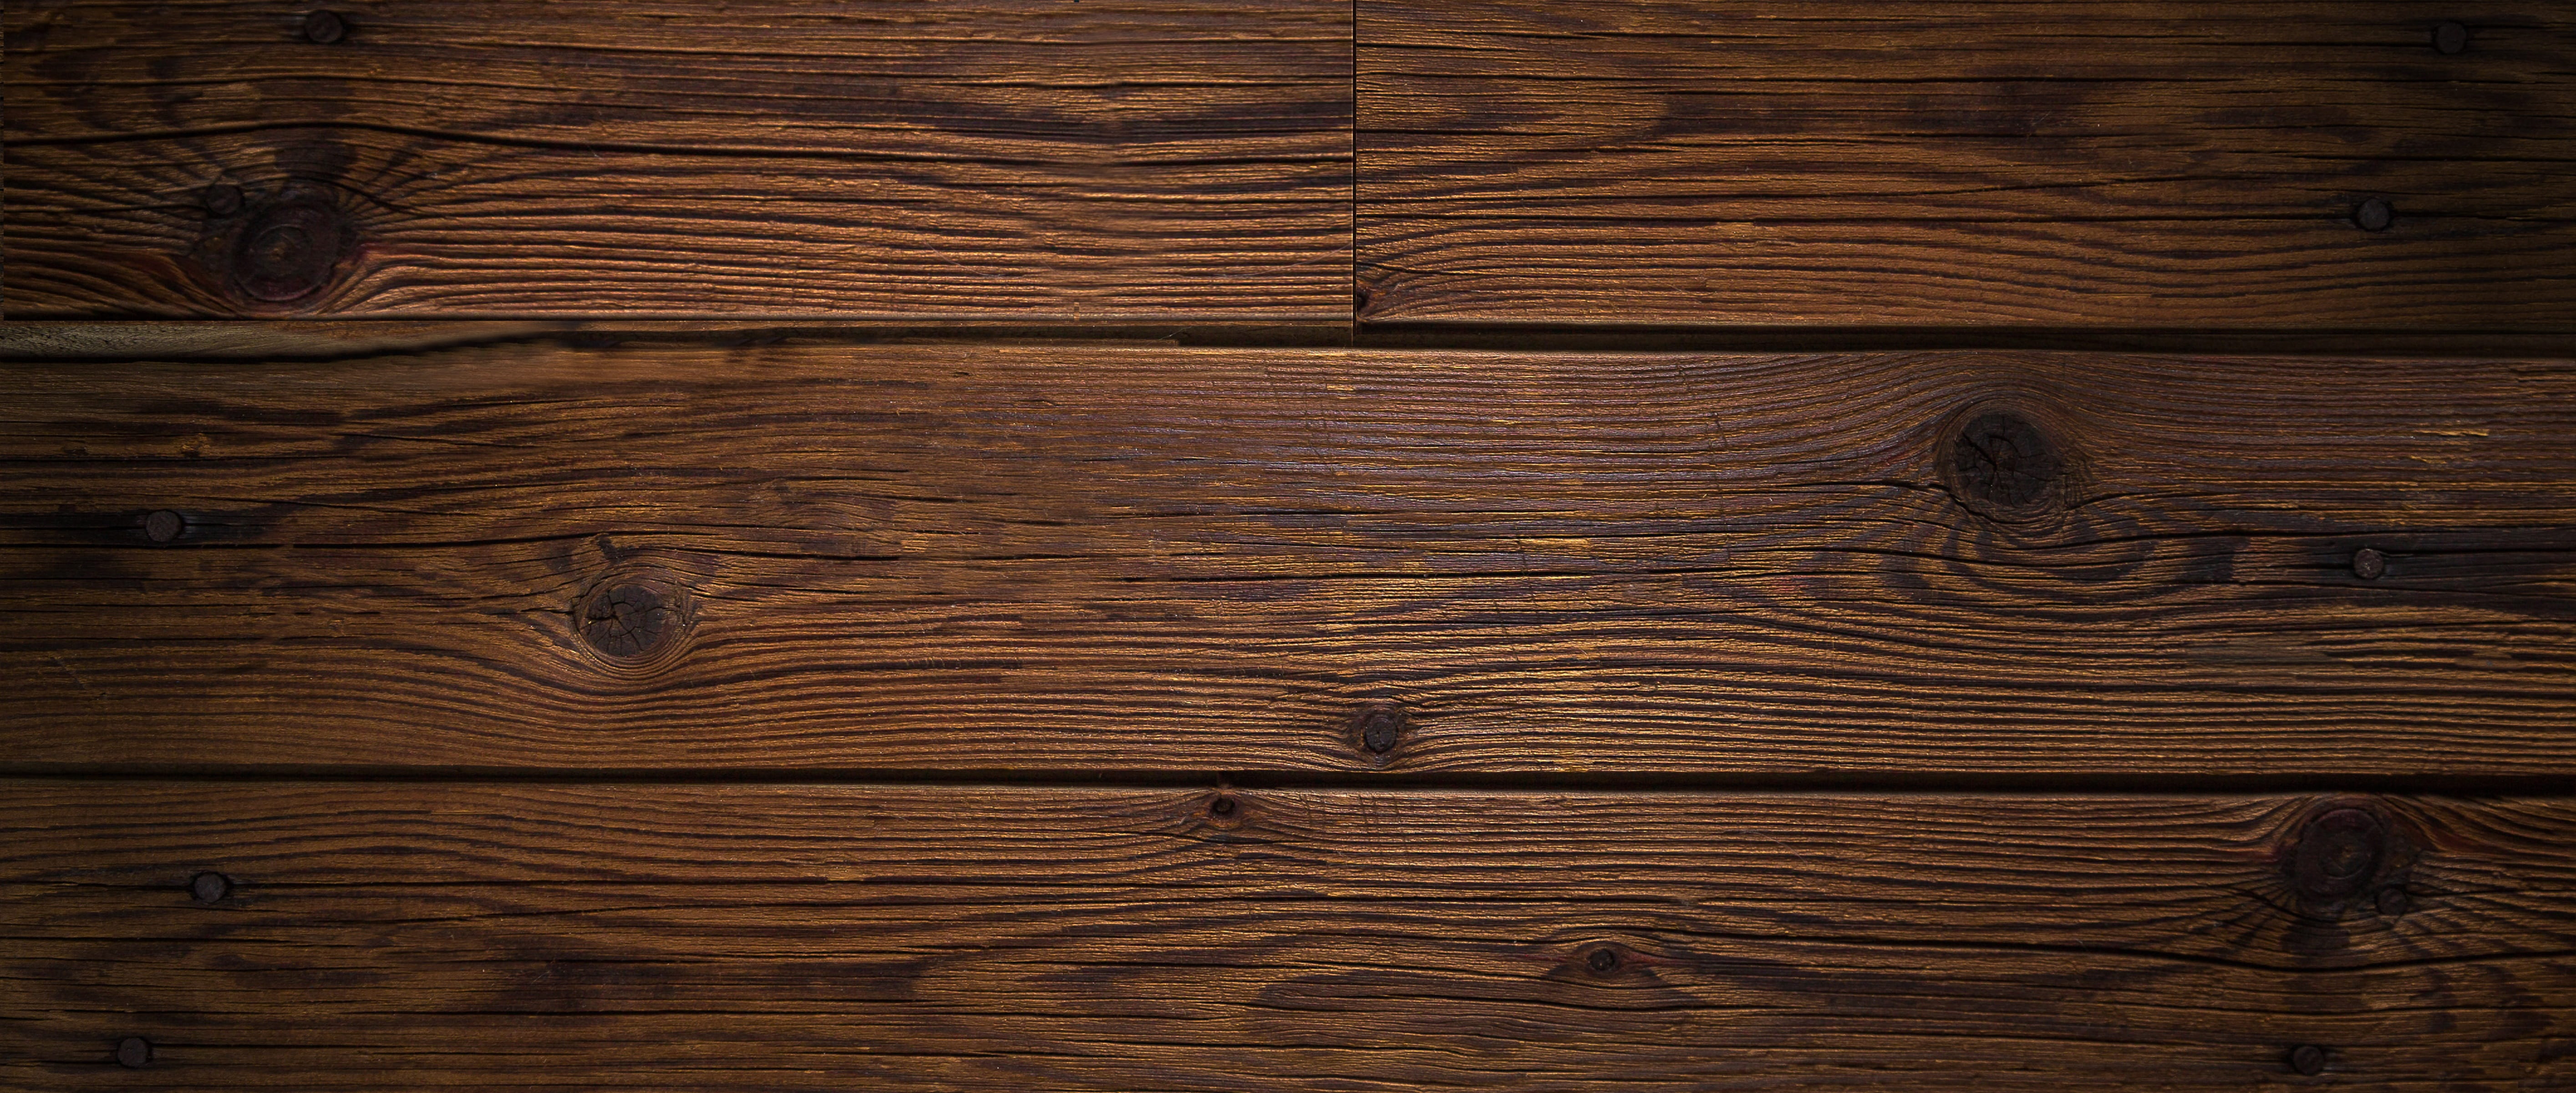 Brown Wooden Board, background, carpentry, construction, dark